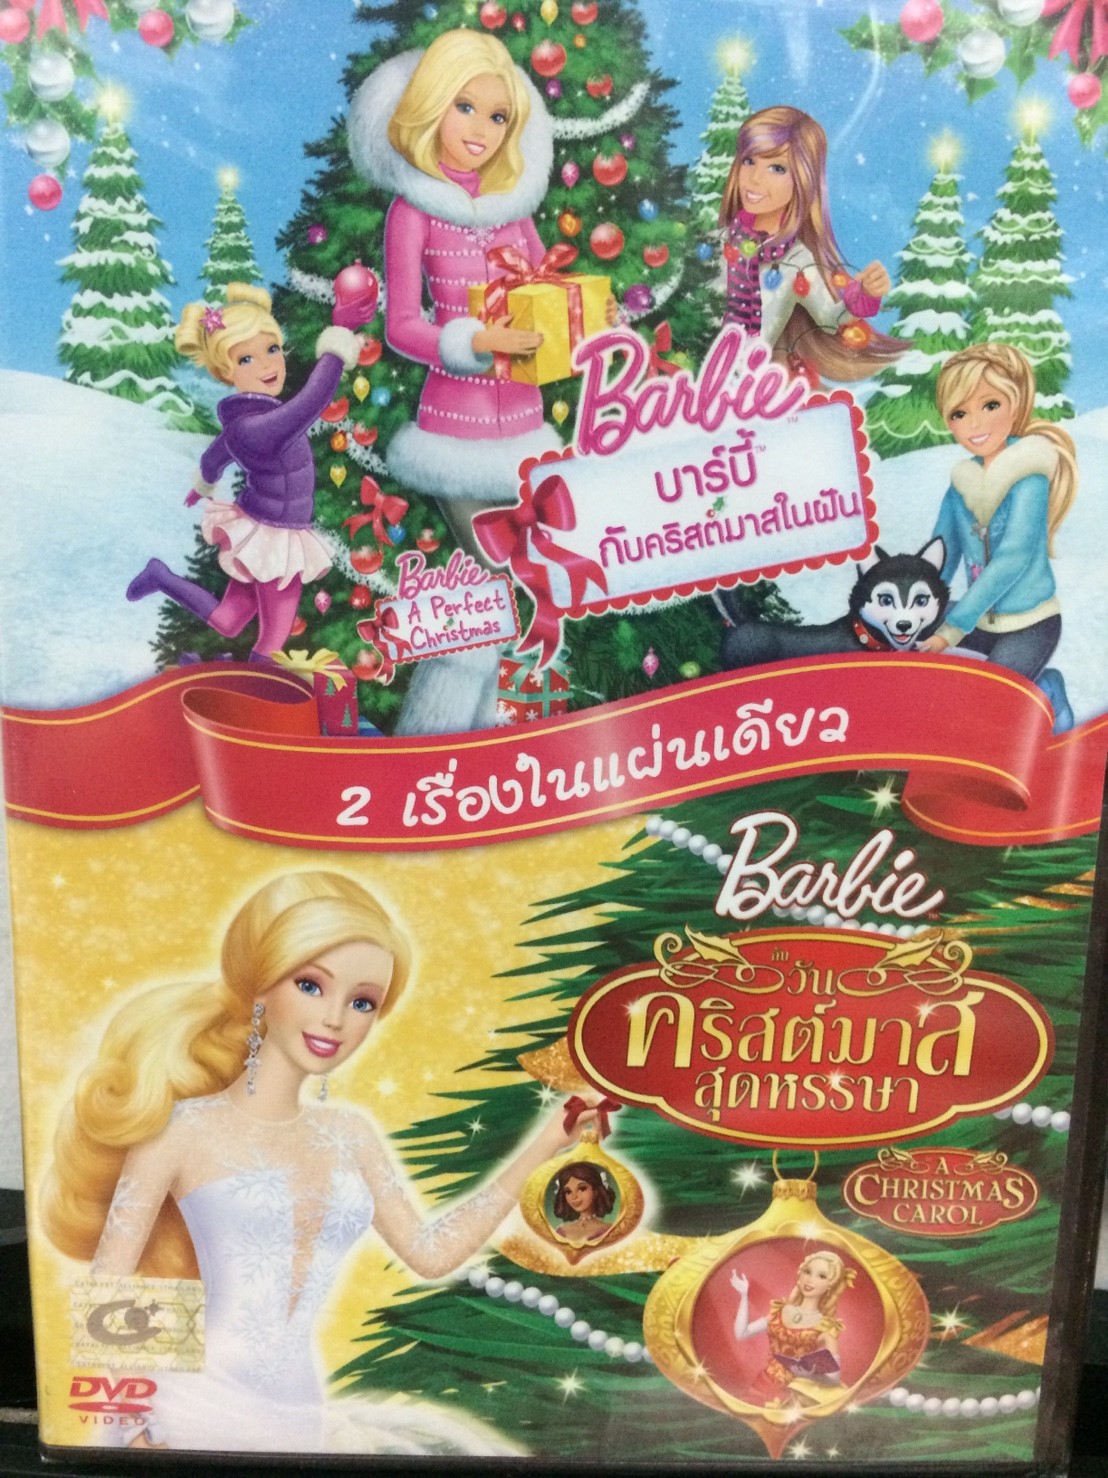 DVDการ์ตูน บาร์บี้ กับคริสต์มาสในฝัน+บาร์บี้วันคริสต์มาสสุดหรรษา (DVDBARBIE59145-บาร์บี้กับคริสต์มาสในฝัน+บาร์บี้วันคริสต์มาสสุดหรรษา) พากย์ไทย เท่านั้น บาร์บี้ barbies การ์ตูน การ์ตูนชุด cartoon แผ่นการ์ตูน ดูหนัง หนังการ์ตูน ดีวีดีการ์ตูน STARMART